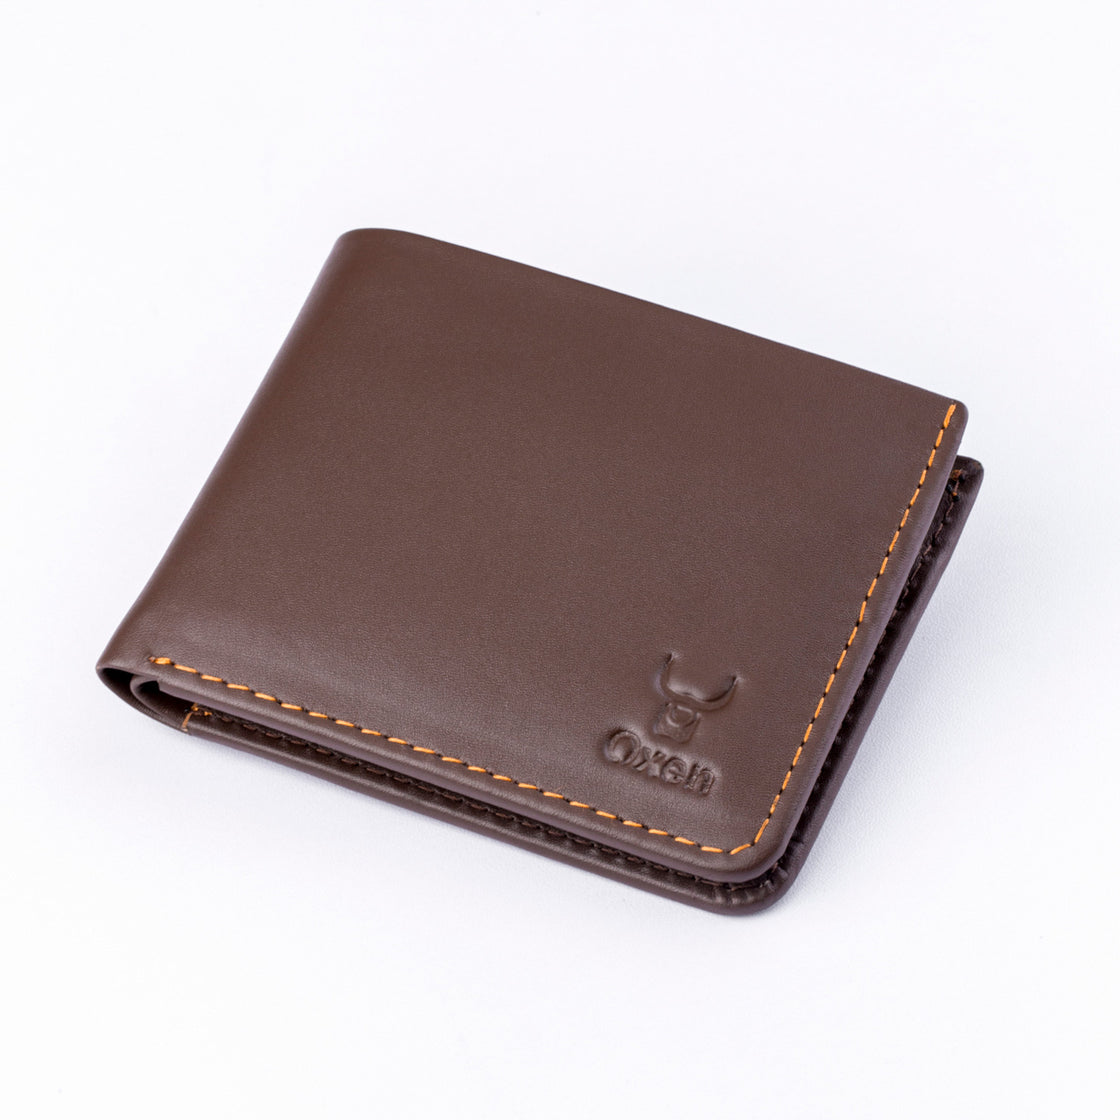 Folius Leather Wallet